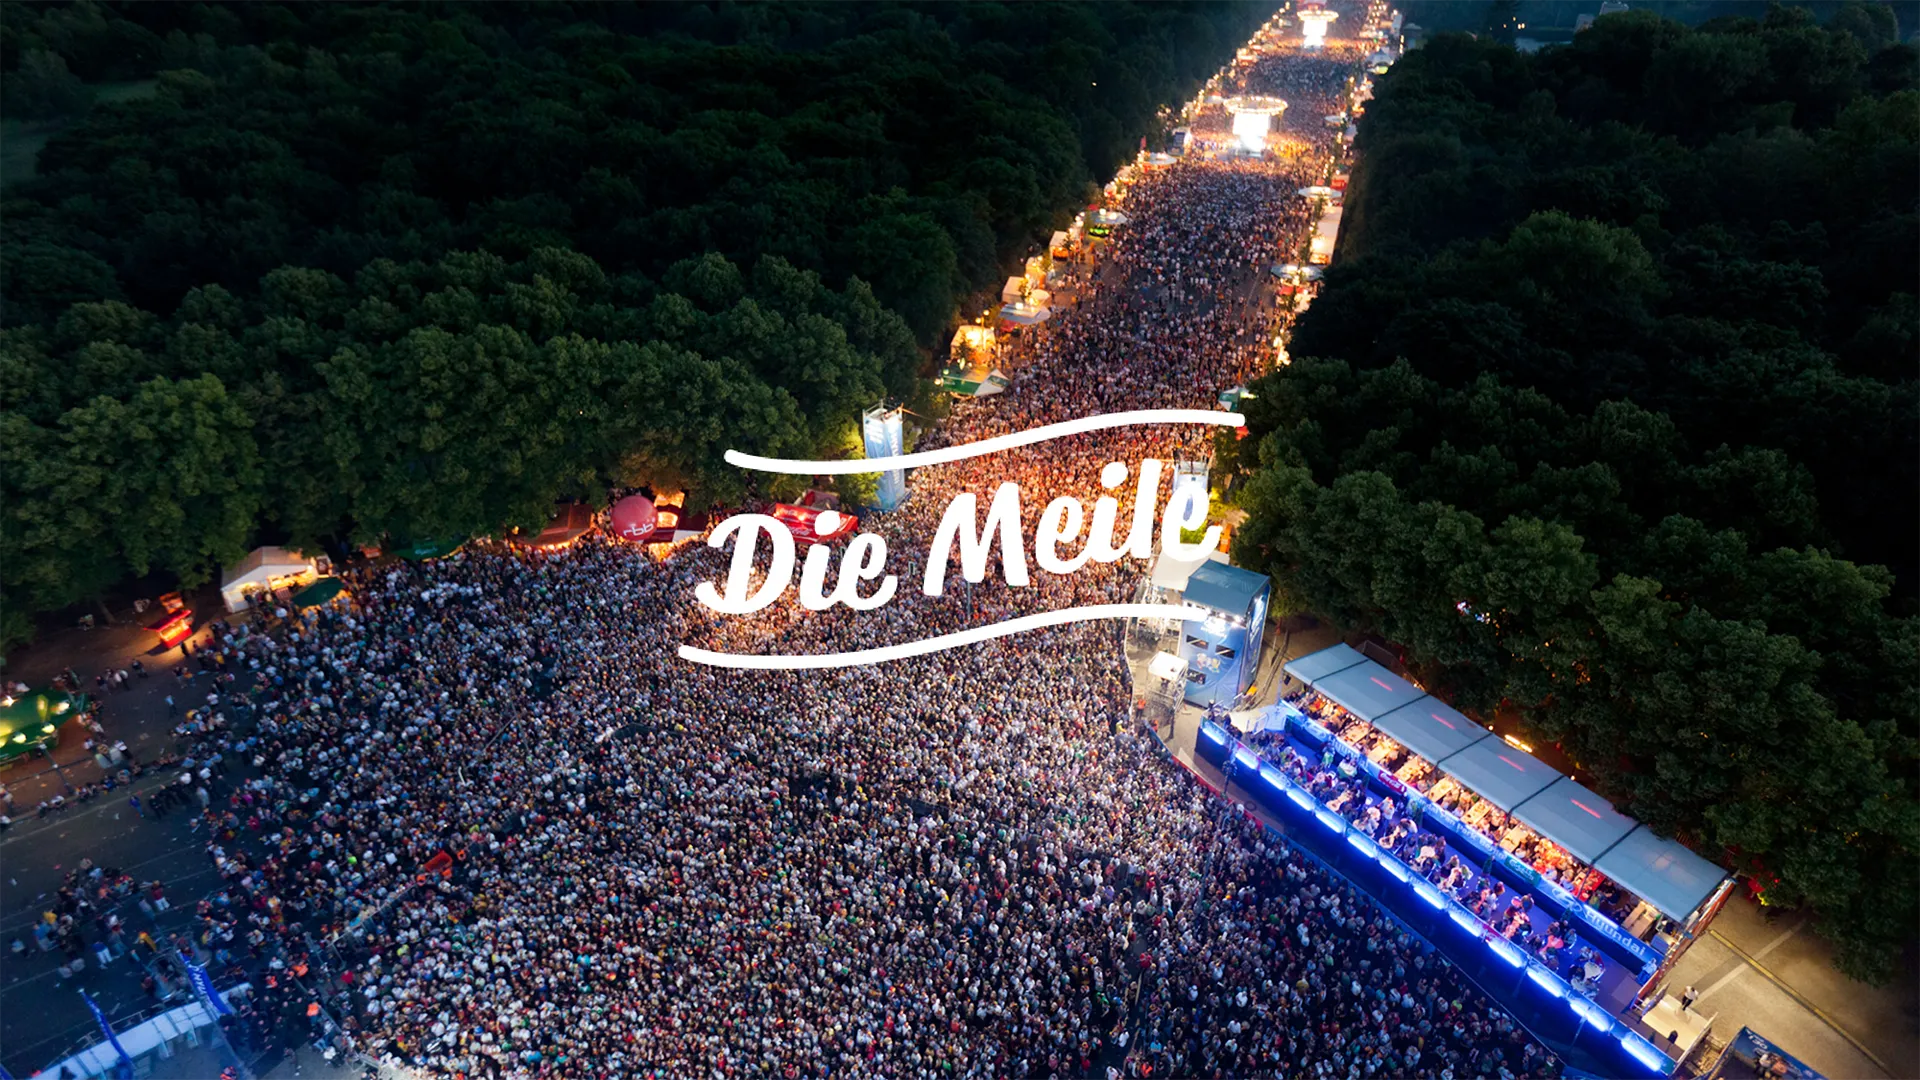 Ein Bild zeigt das Cover von "Die Meile" der deutschen Fanmeile am Brandenburger Tor.